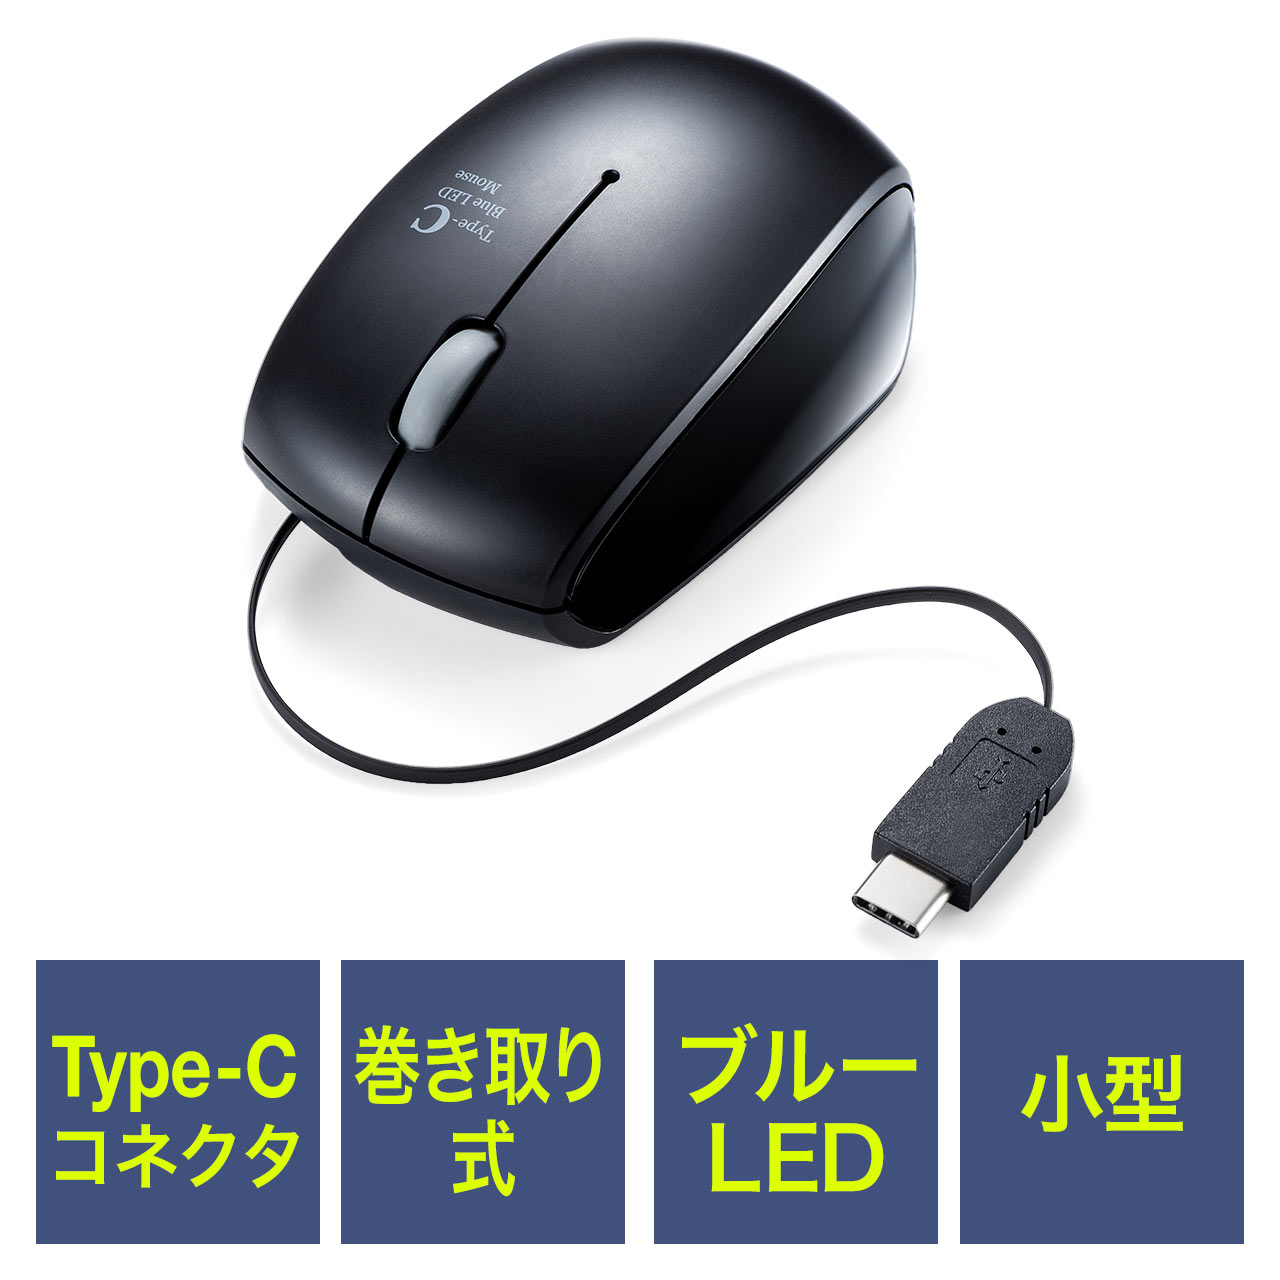 L}EX USB Type-C u[LEDZT[ RpNg 3{^ 400-MA100